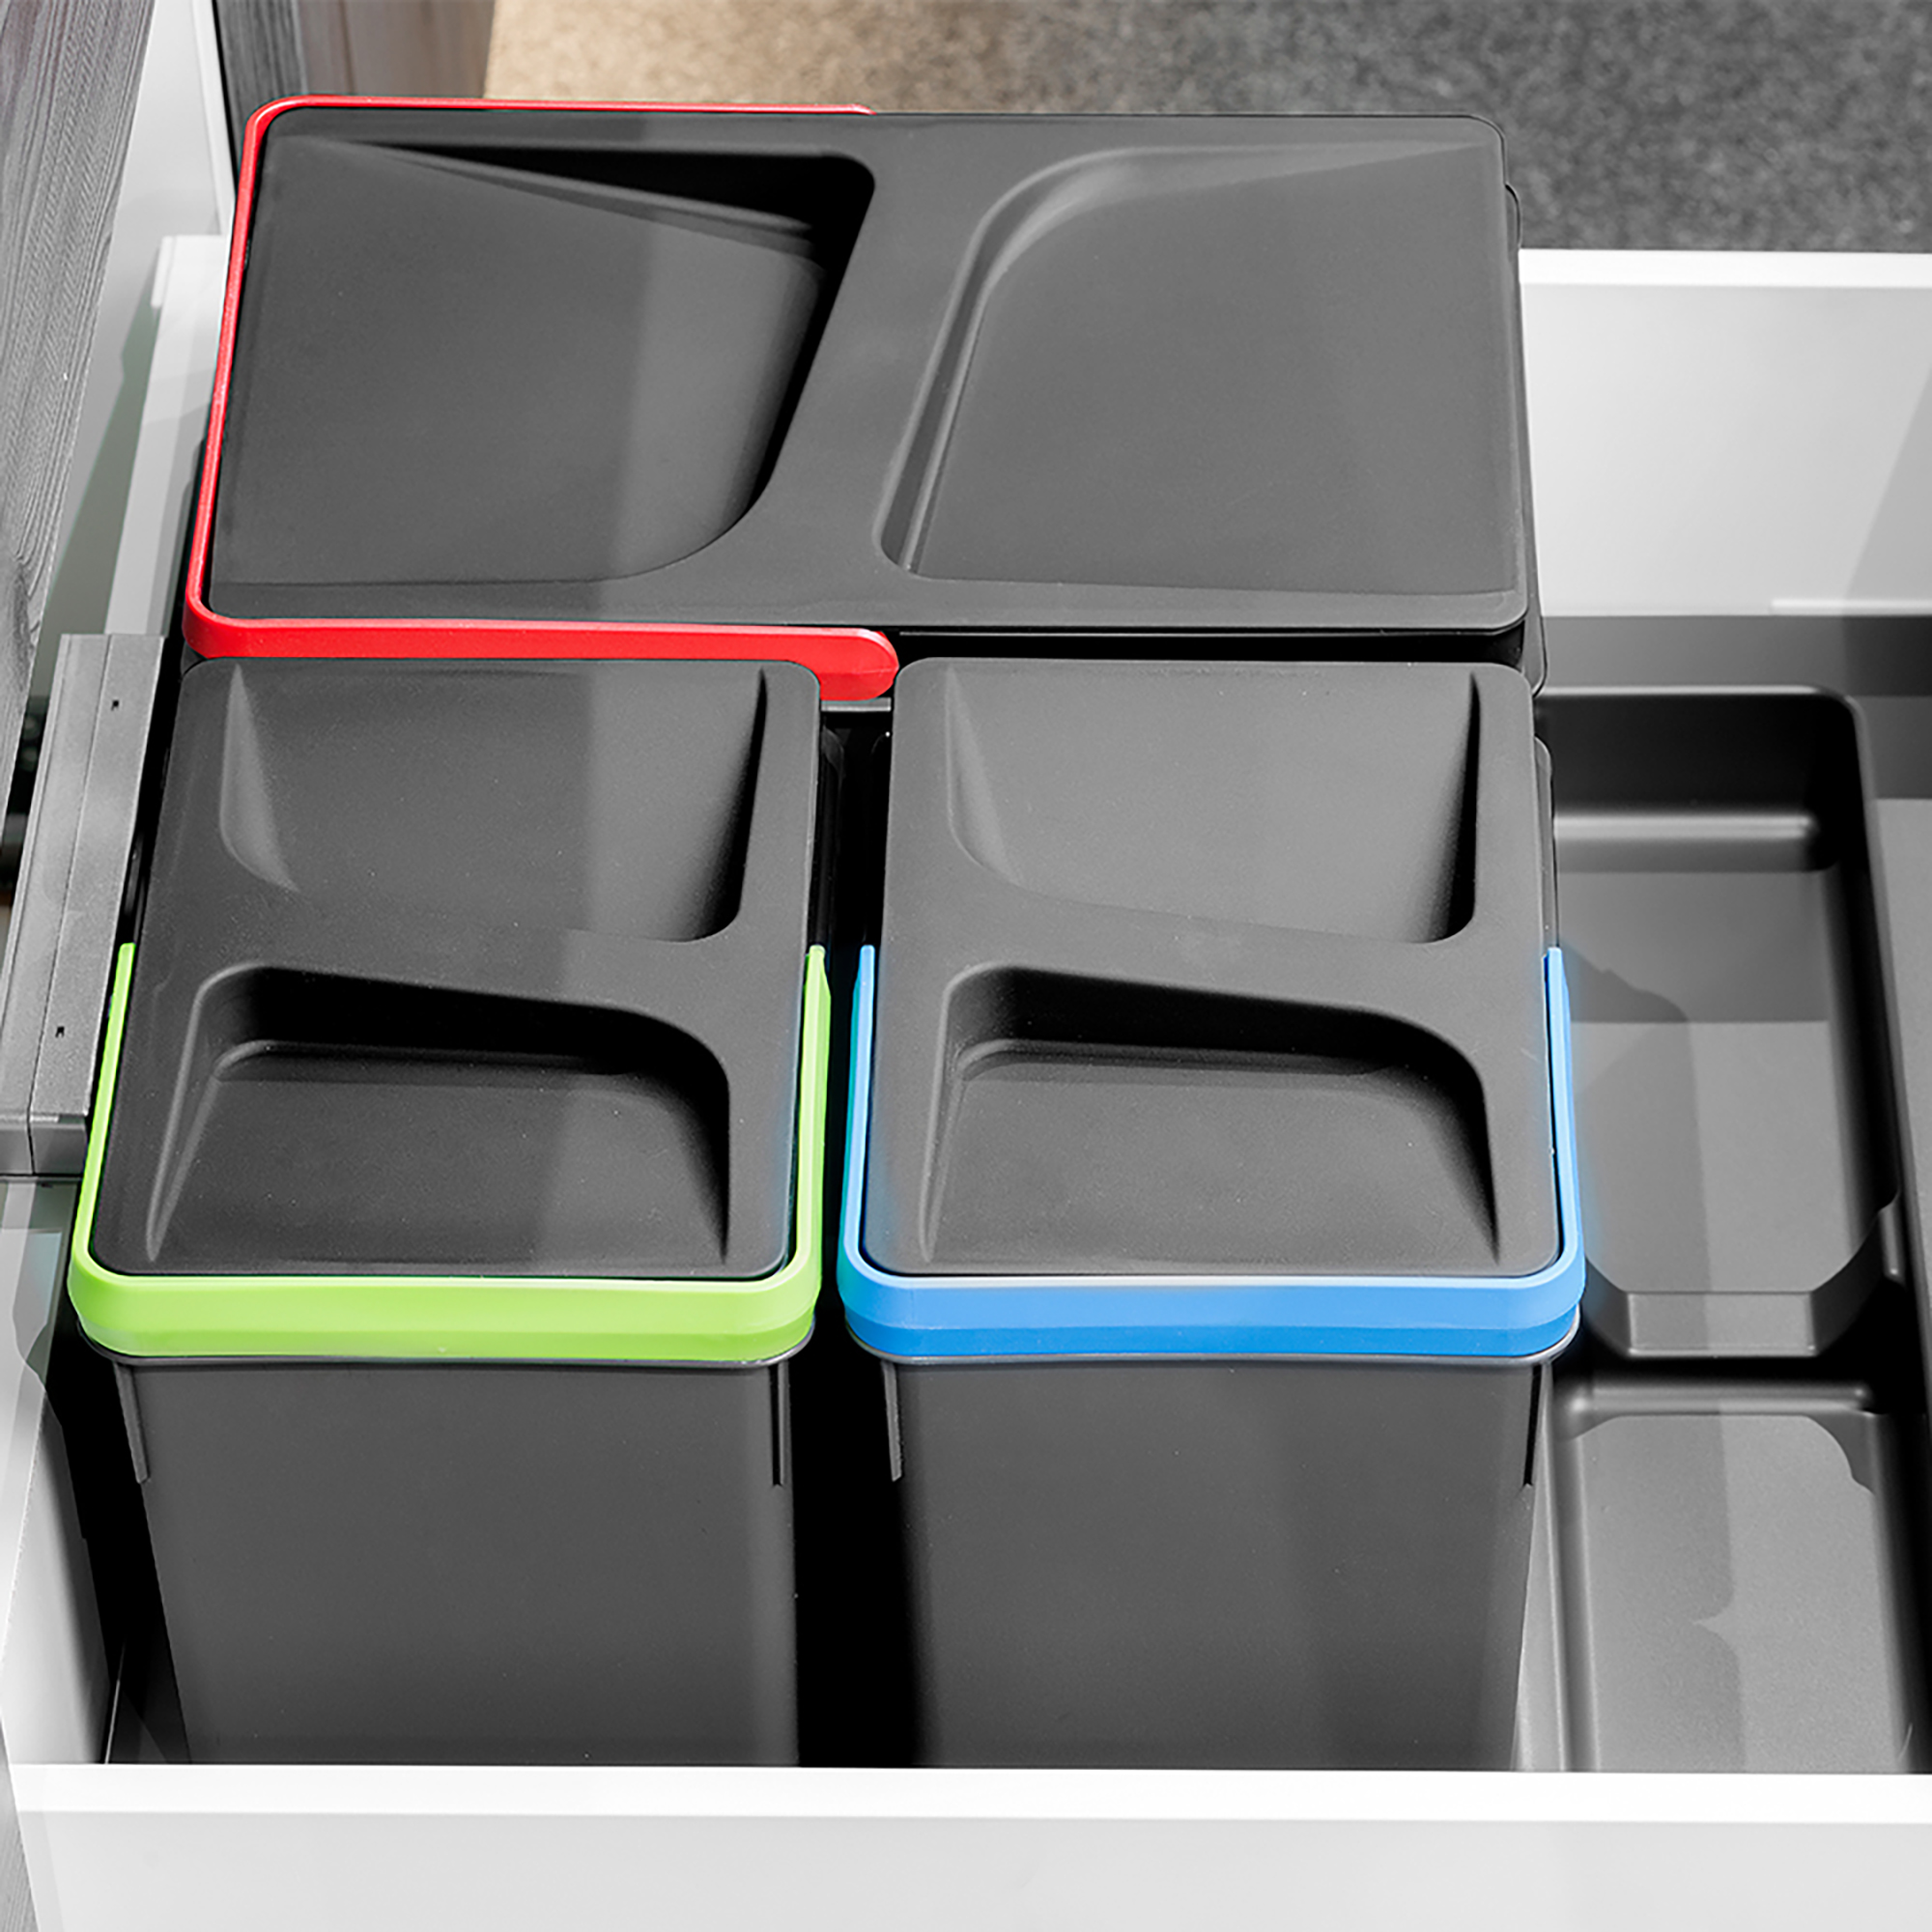 Kit de Recycle de poubelle de recyclage pour tiroir de cuisine